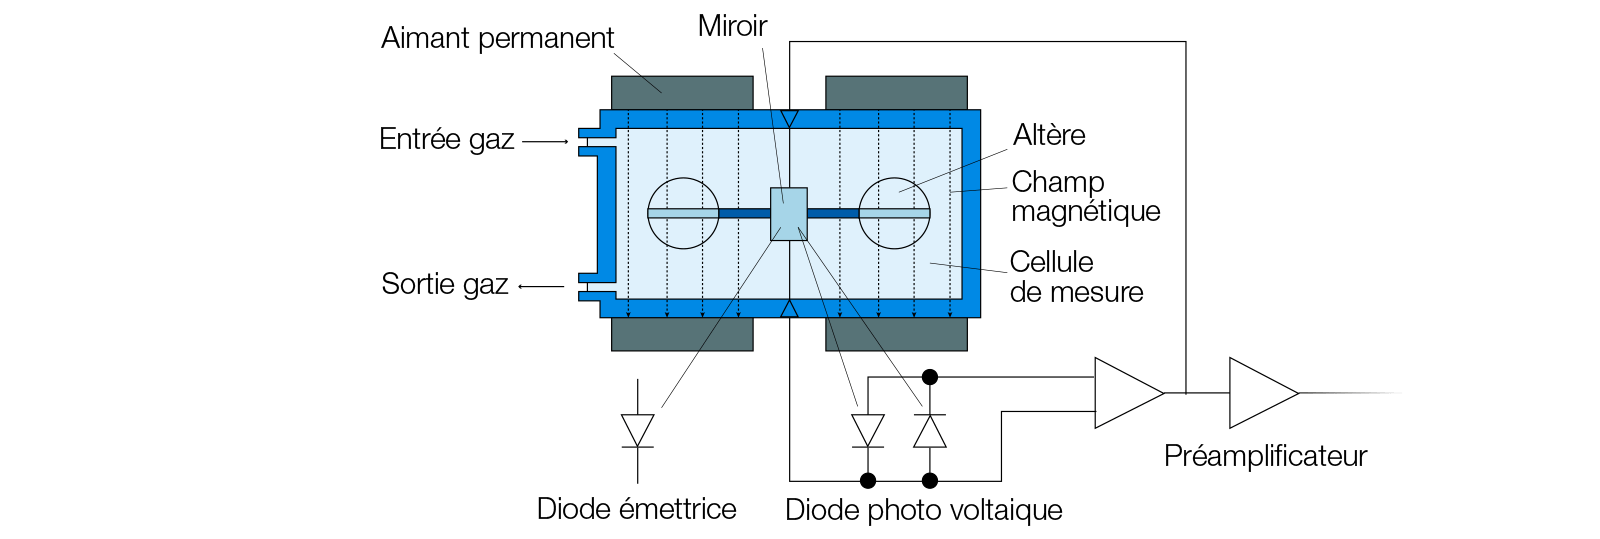 analyseur-d-oxygene-paramagnetique-a-detection-optique-schema-fr